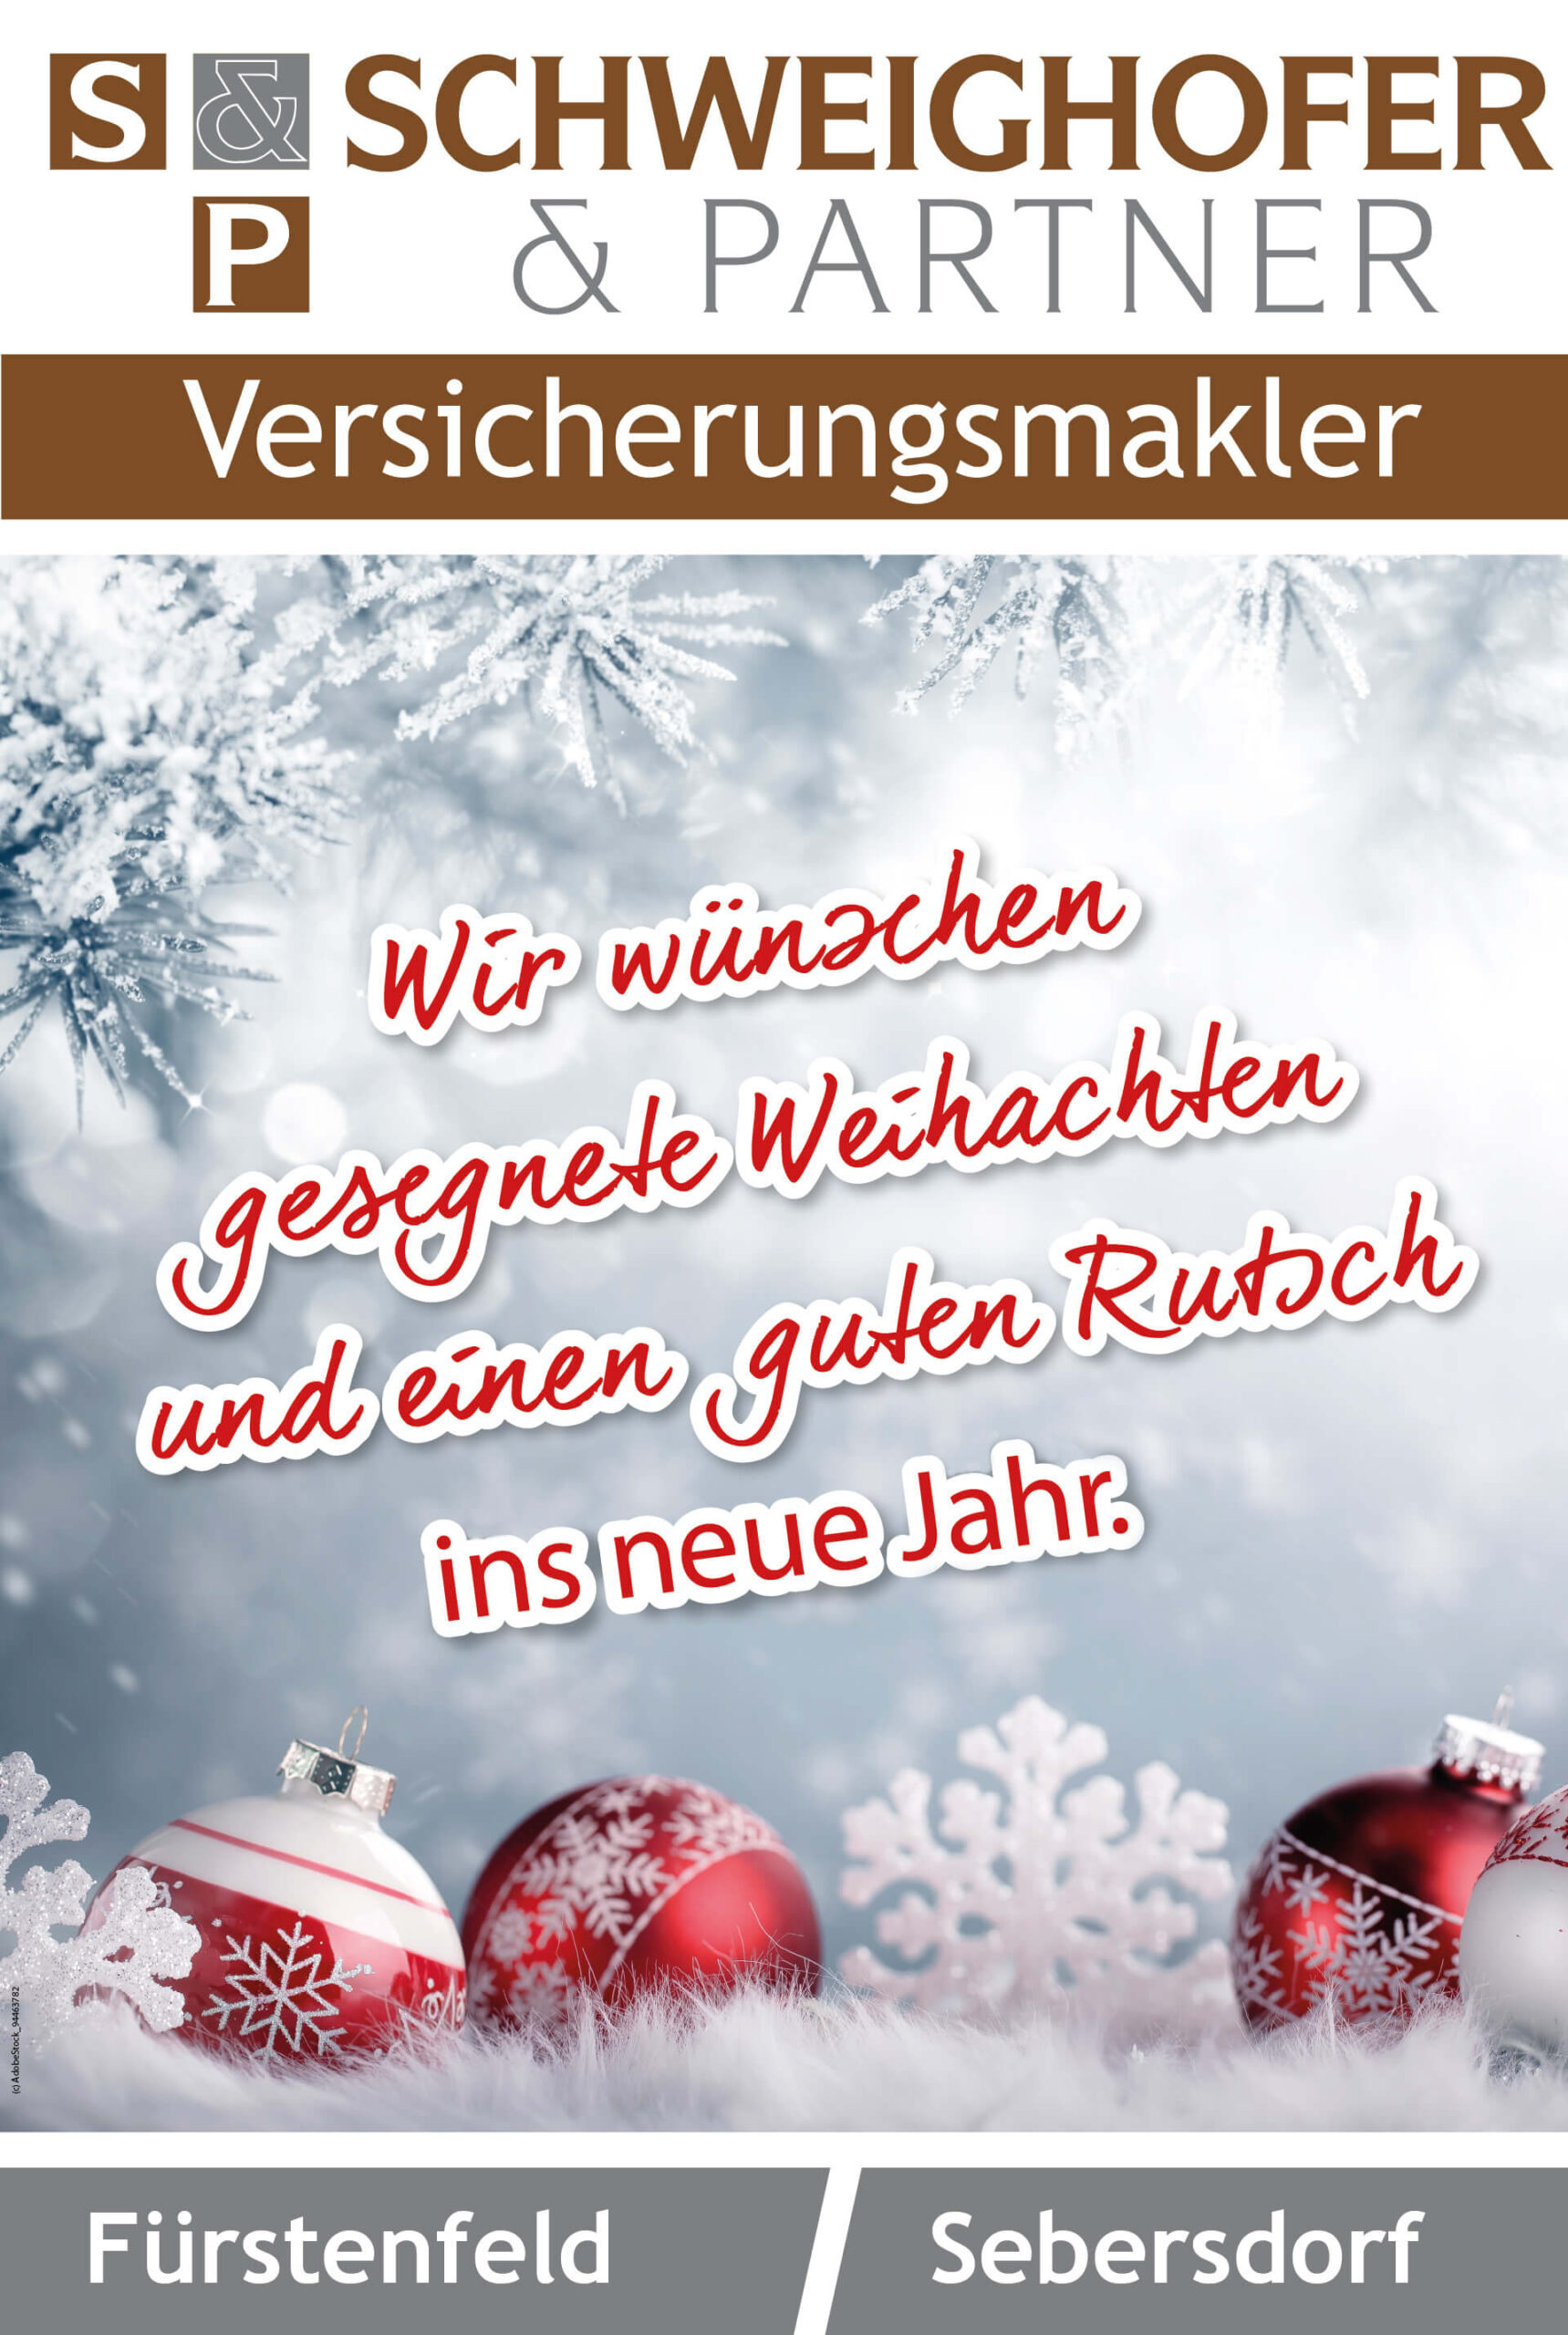 Schweighofer_Partner_11_Frohe_Weihnachten